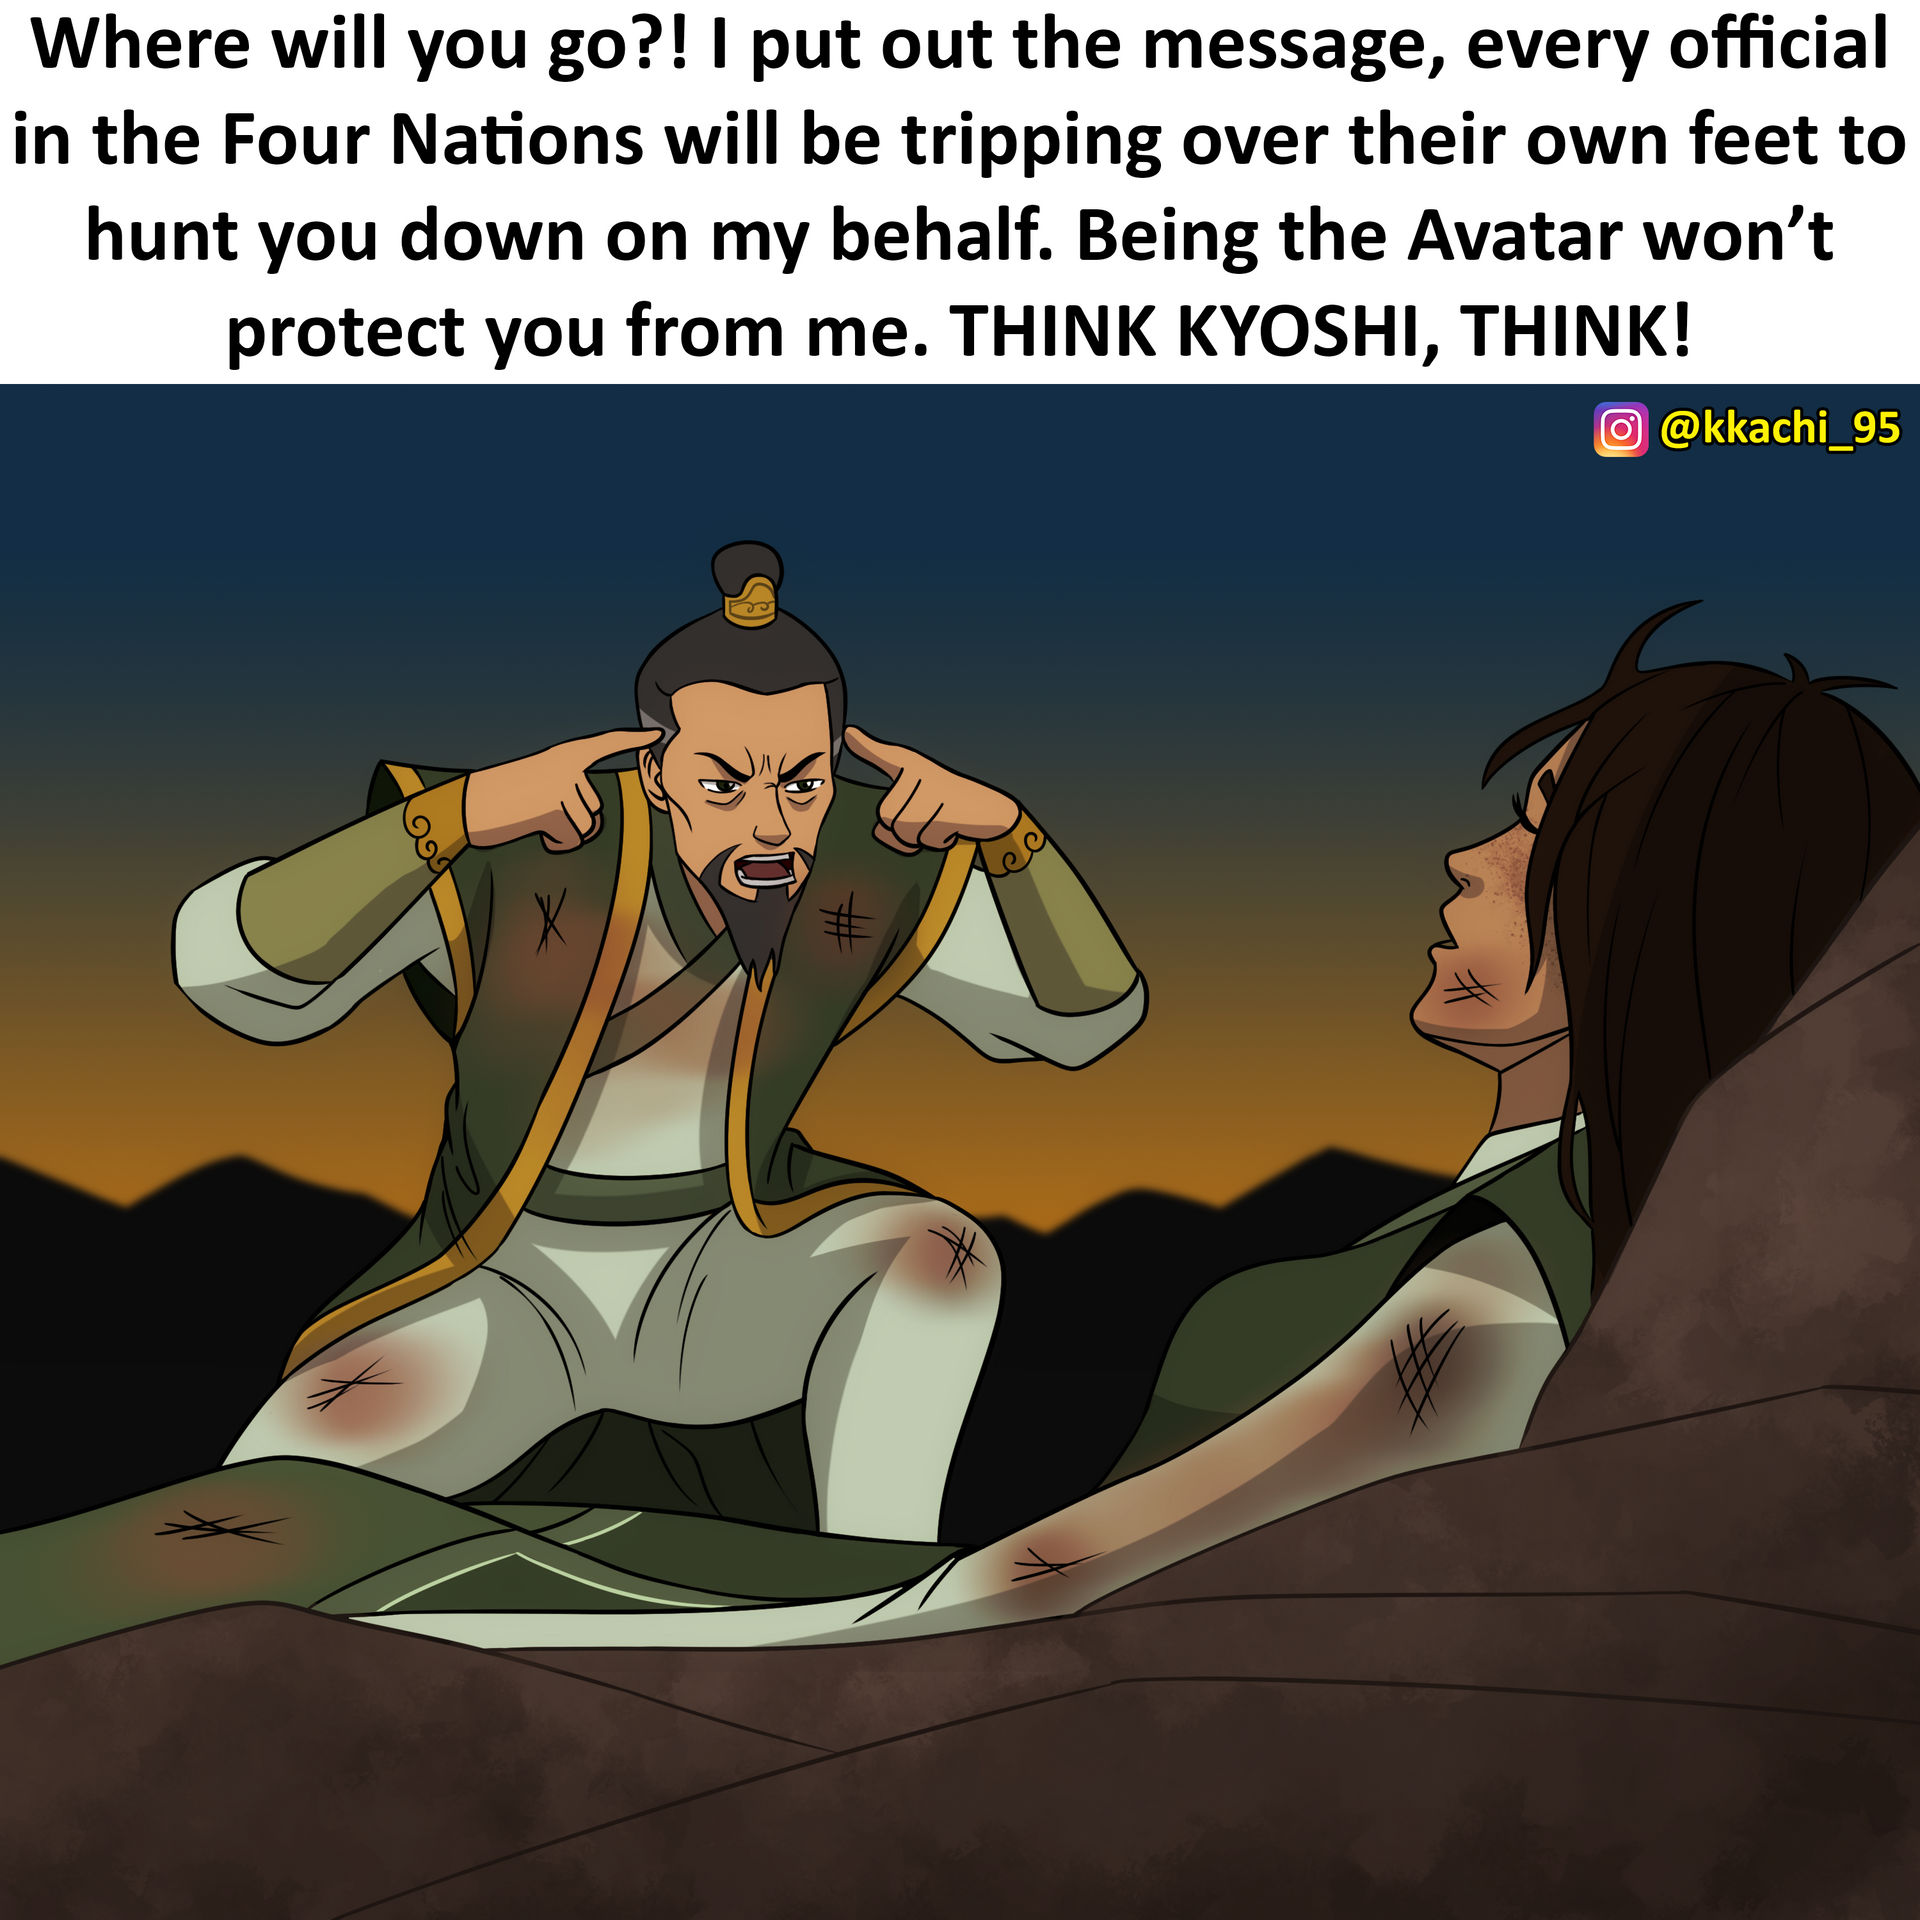 Hãy suy nghĩ theo phong cách của Kyoshi, người đã cứu vãn thế giới nhiều lần. Đem lại nguồn cảm hứng cho bản thân và làm cho mọi việc trở nên đơn giản hơn nhờ sự tư duy sắc bén của bạn.